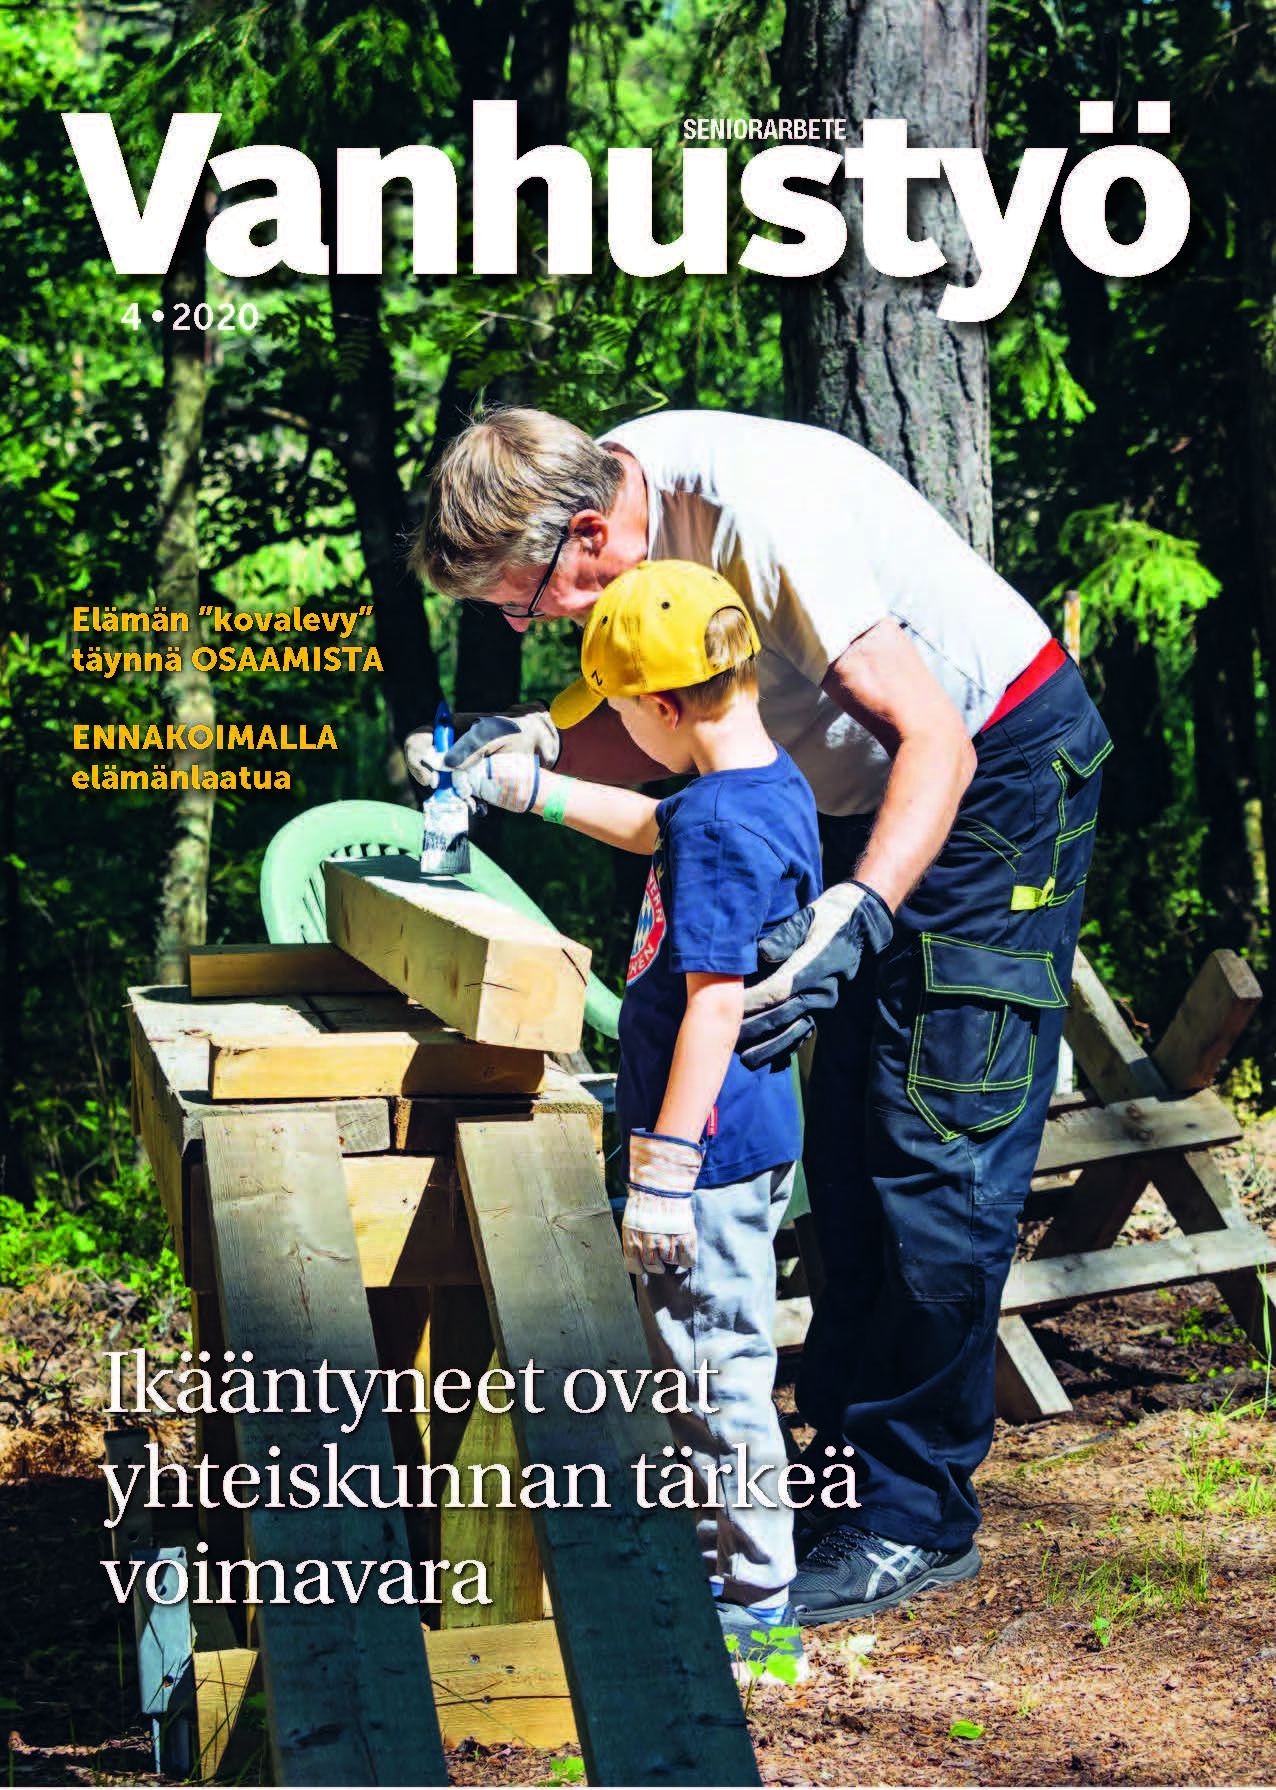 Vanhustyö-lehti numero 4/2020 kansikuva - tietoa ammattilaisille.